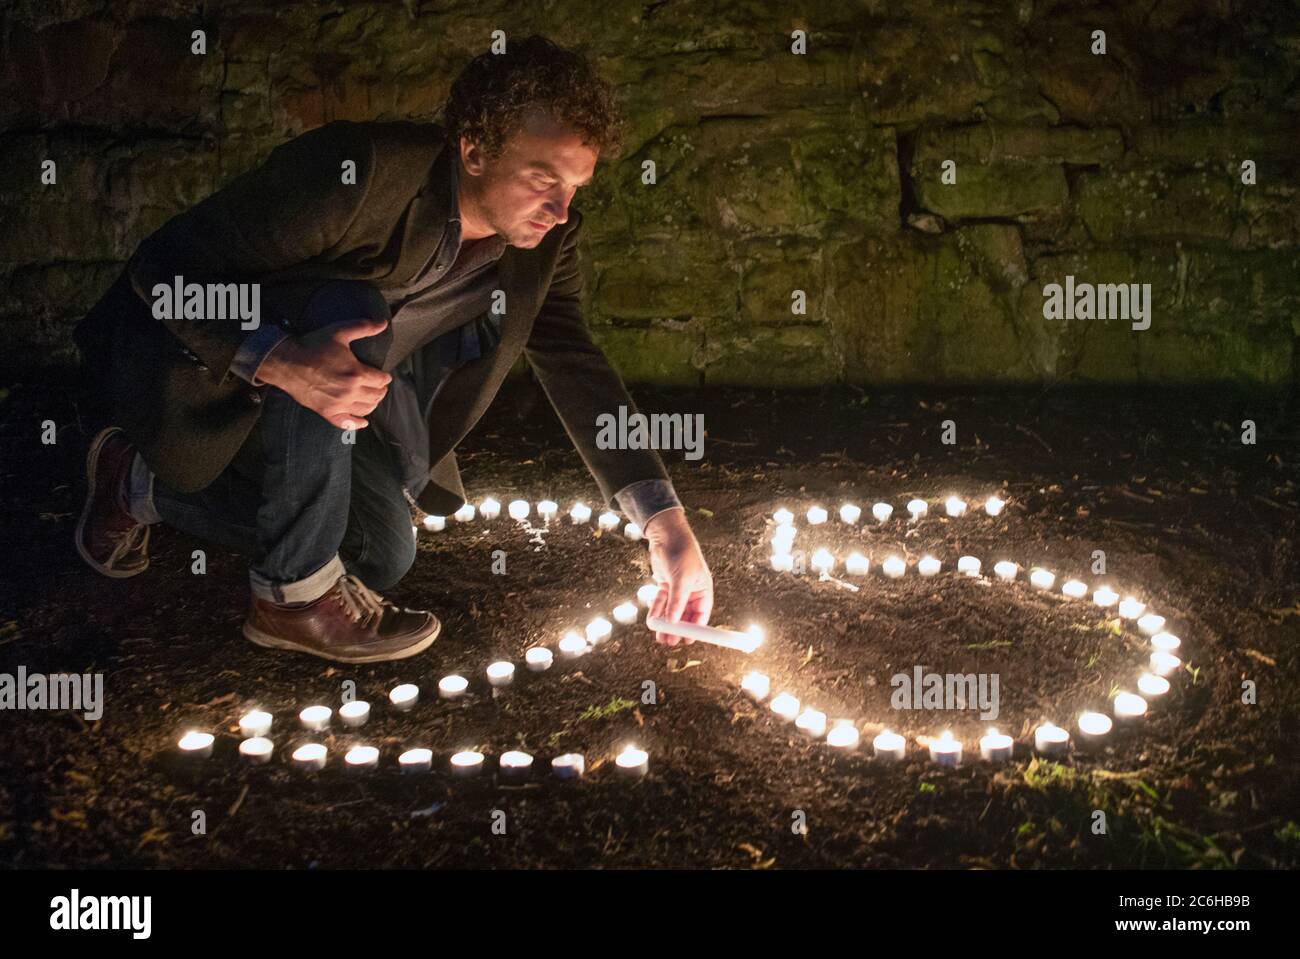 Samir Mehanovic, réalisateur primé par le BAFTA, venu au Royaume-Uni en tant qu'immigrant de la guerre de Bosnie en 1995 et qui vit maintenant à Édimbourg, allume des bougies pour commémorer le 25e anniversaire du génocide de Srebrenica. Banque D'Images